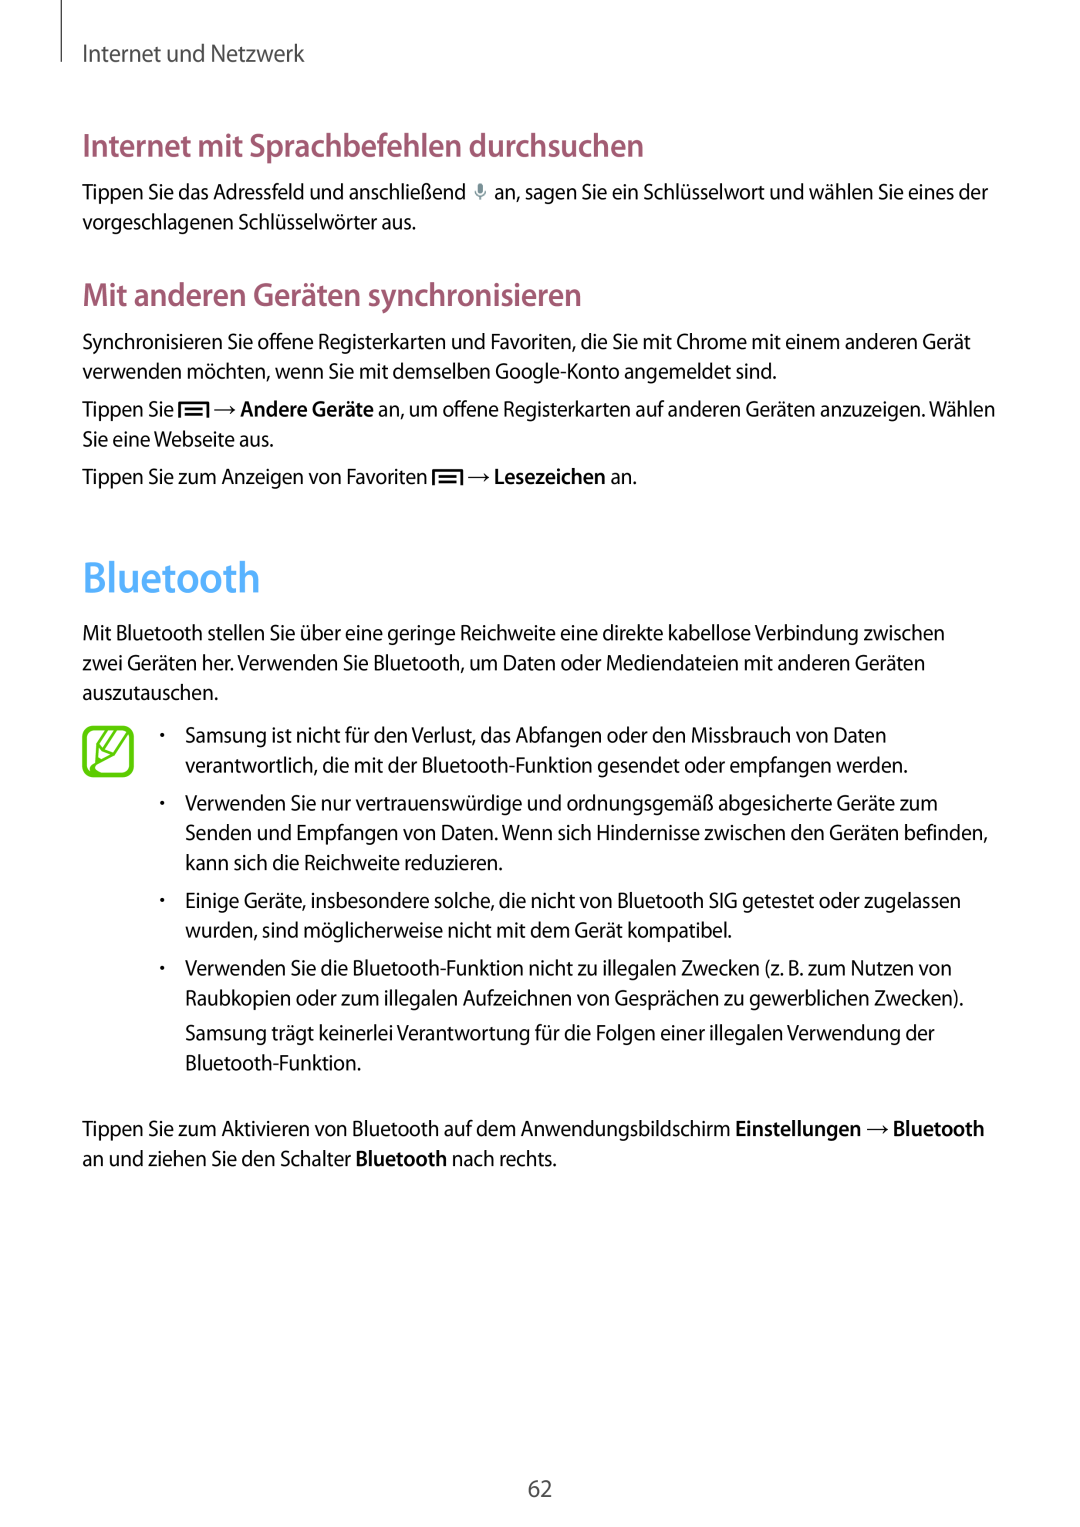 Samsung SM-T3150ZWADTM manual Bluetooth, Mit anderen Geräten synchronisieren, Internet mit Sprachbefehlen durchsuchen 